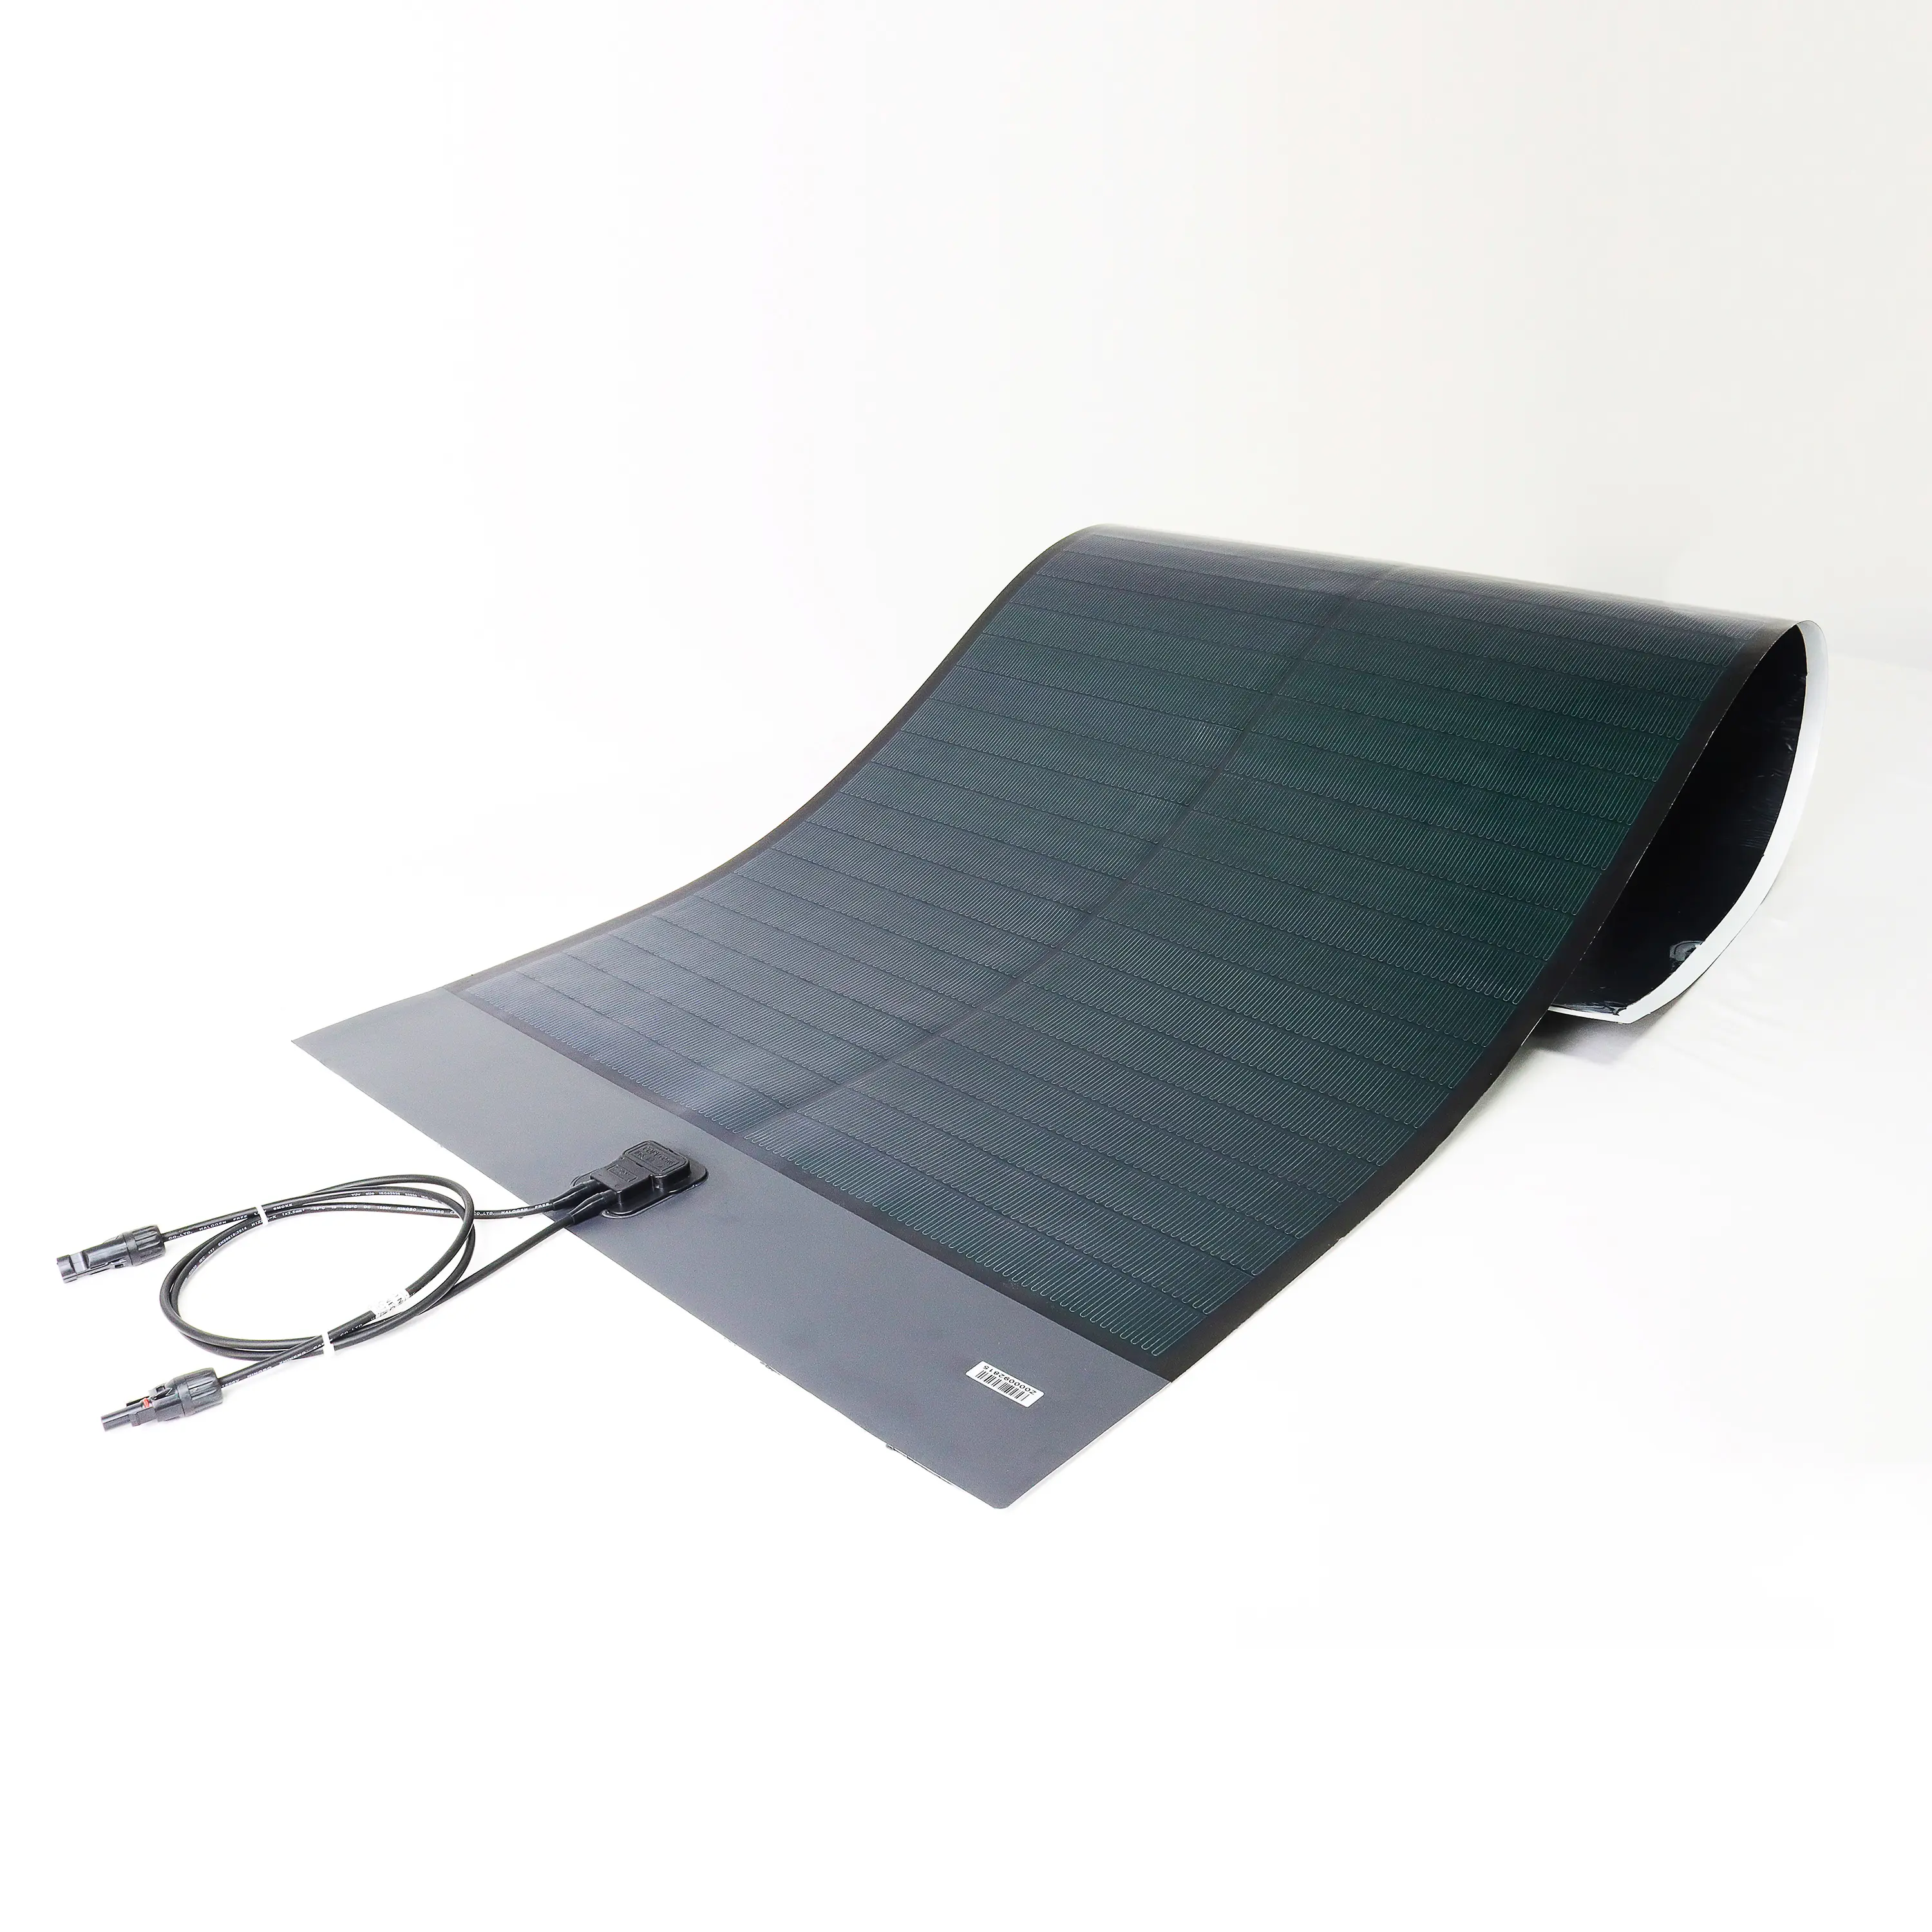 Güneş araba tekne RV kamp gibi çoklu kullanım için 160W thin ince film güneş esnek panel